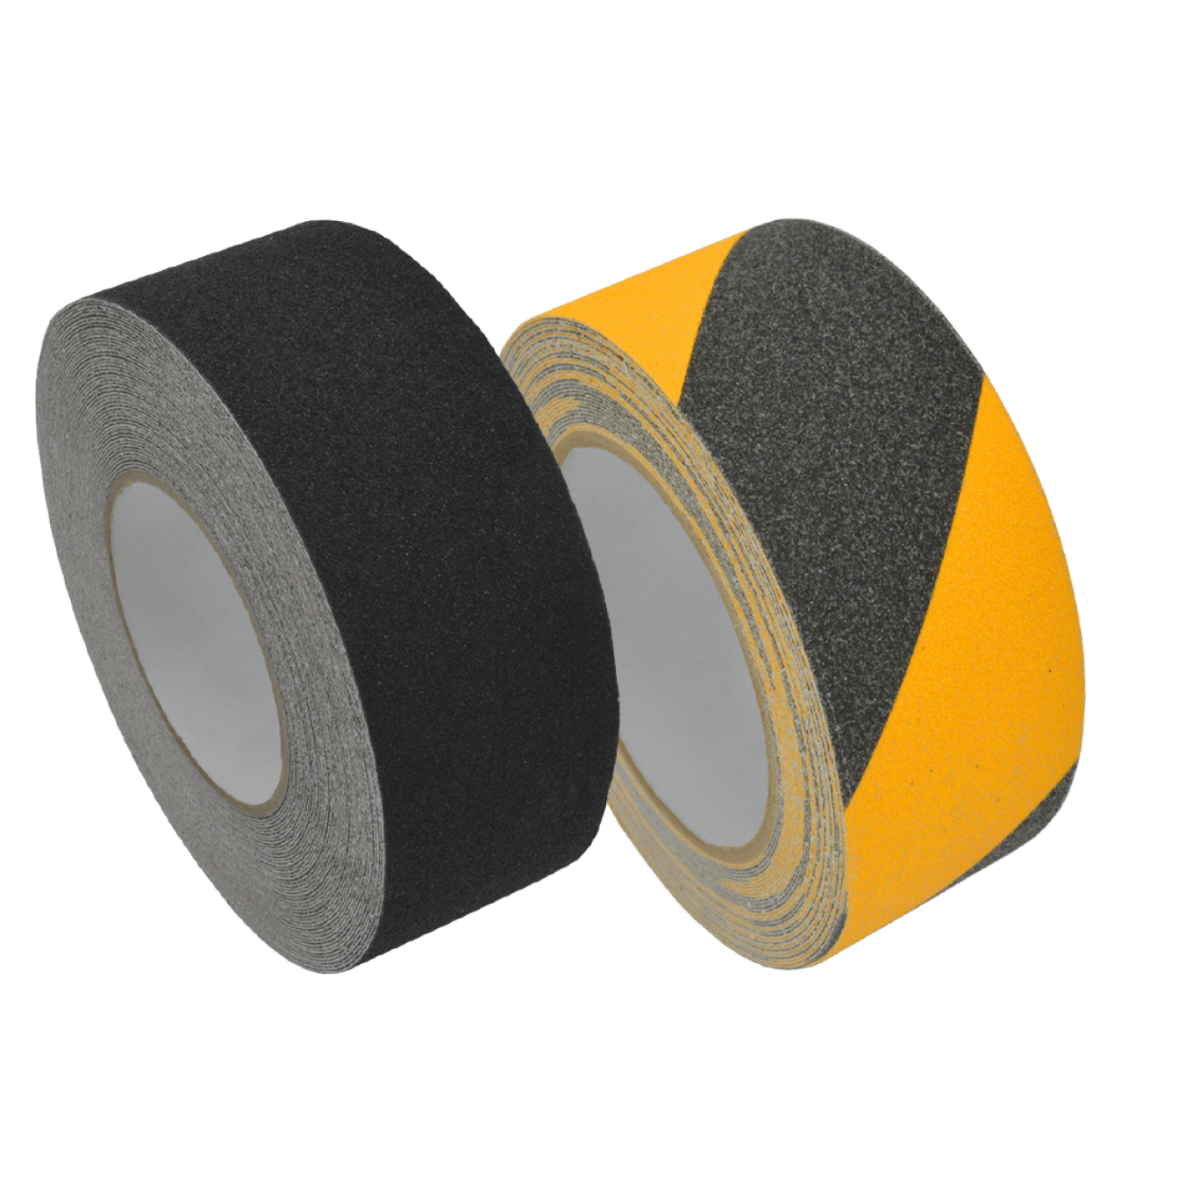 Military & Marine Grade anti-slip tape